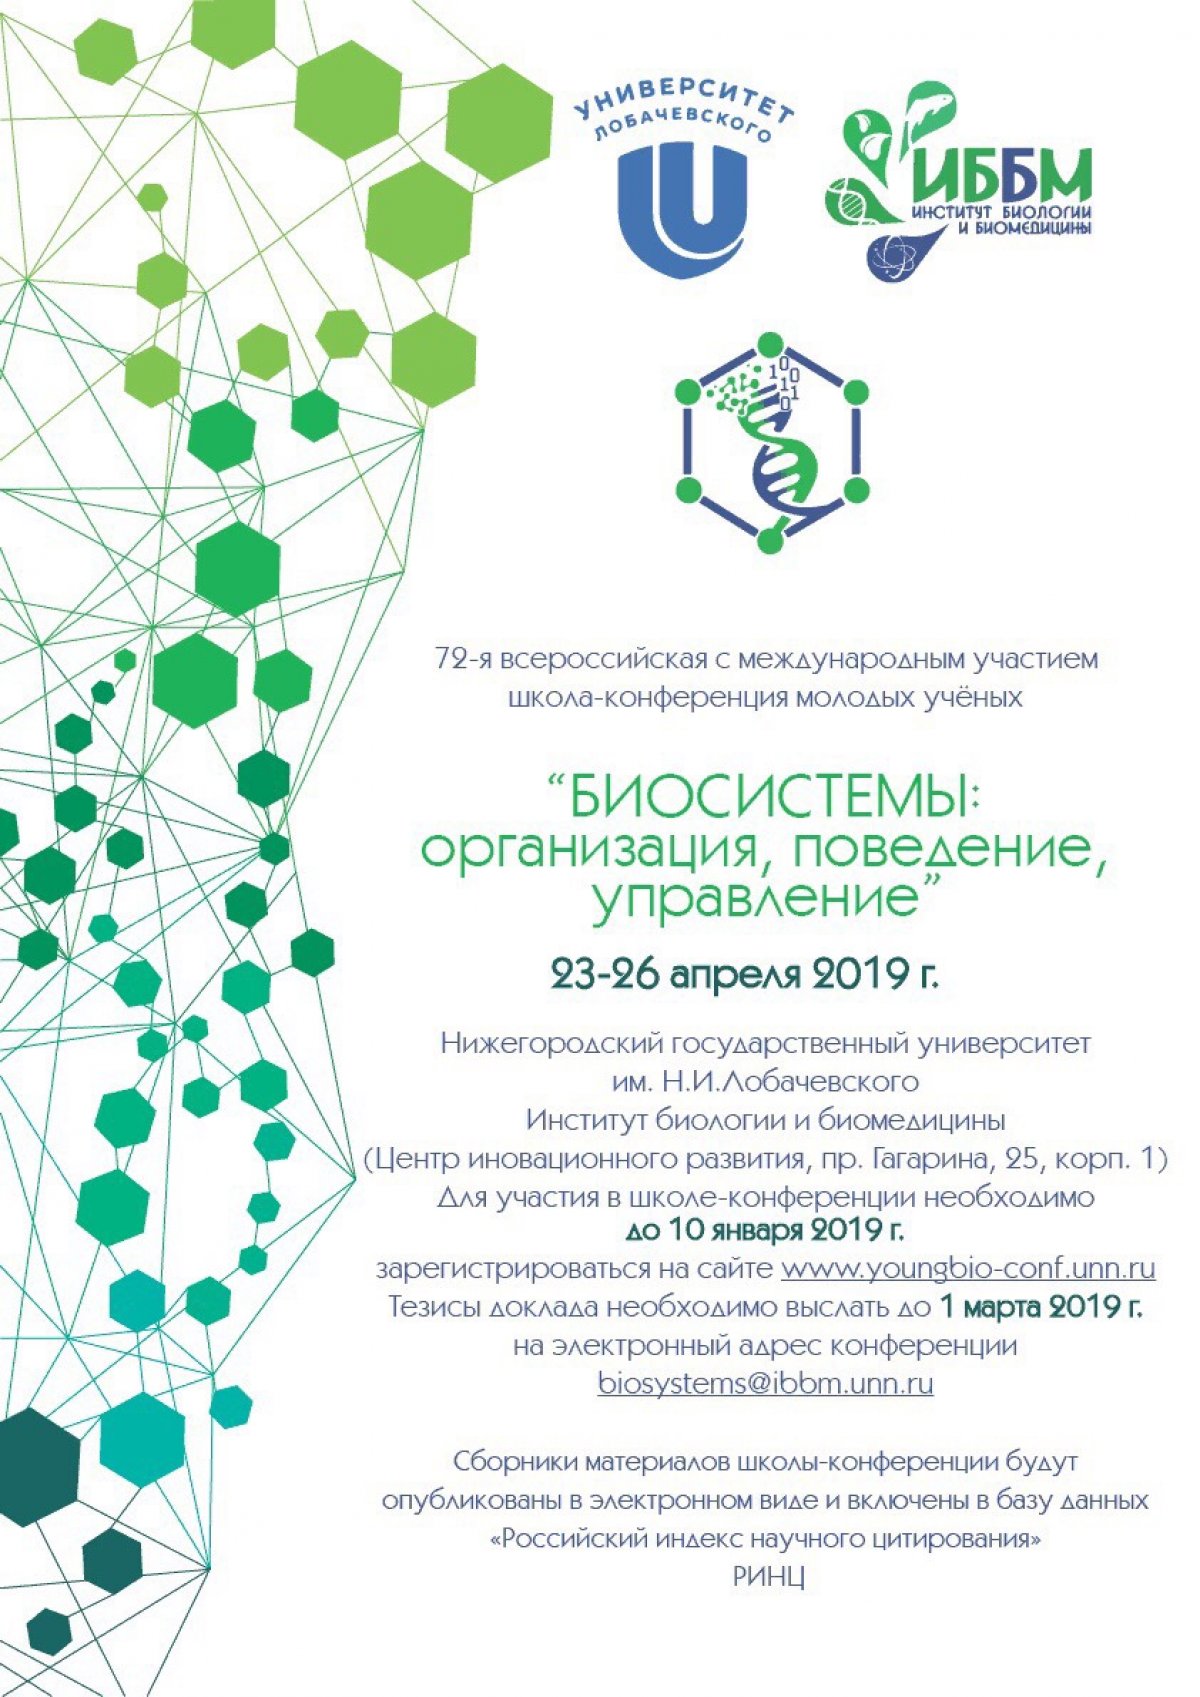 С 23 по 26 апреля 2019 года в Университете Лобачевского, г. Нижний Новгород, состоится 72-я Всероссийская с международным участием школа-конференция молодых ученых «Биосистемы: организация, поведение, управление».